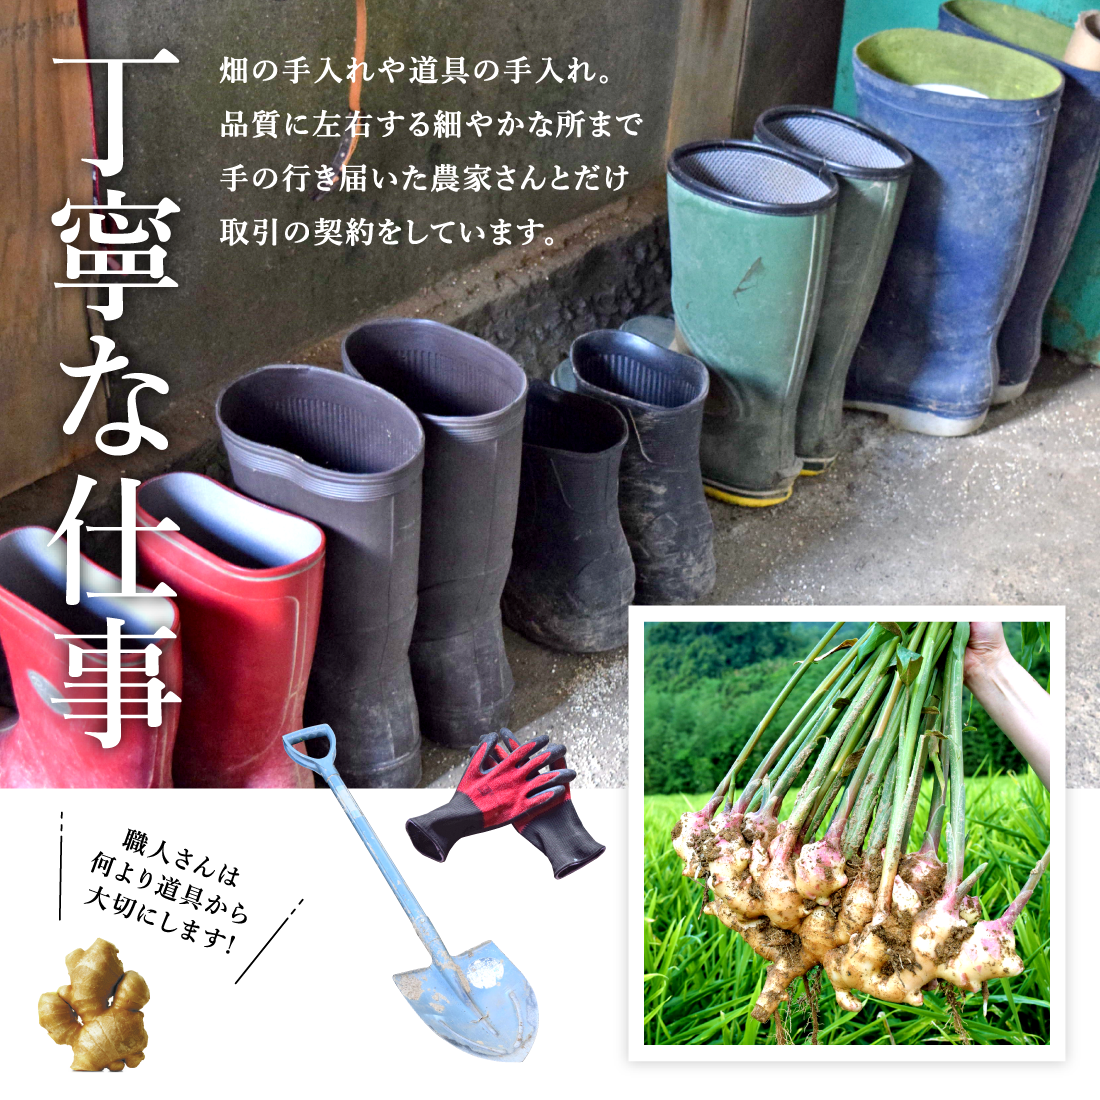 熊本県無農薬生姜のPRポイント1